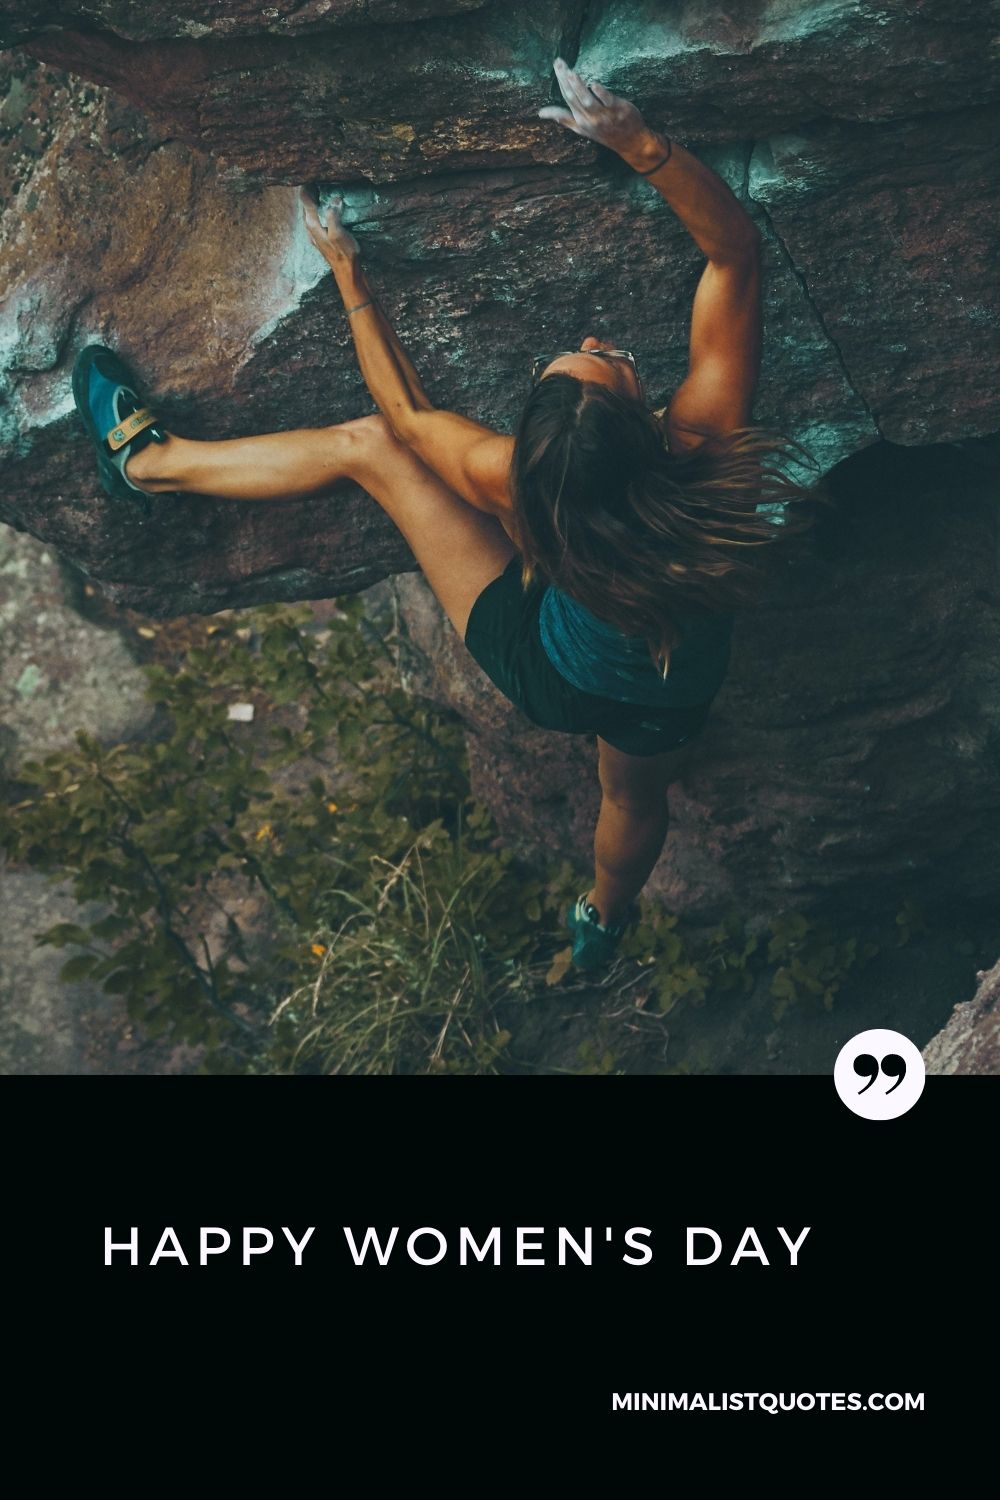 Women's Day Wish: A women climbing on the mountain.